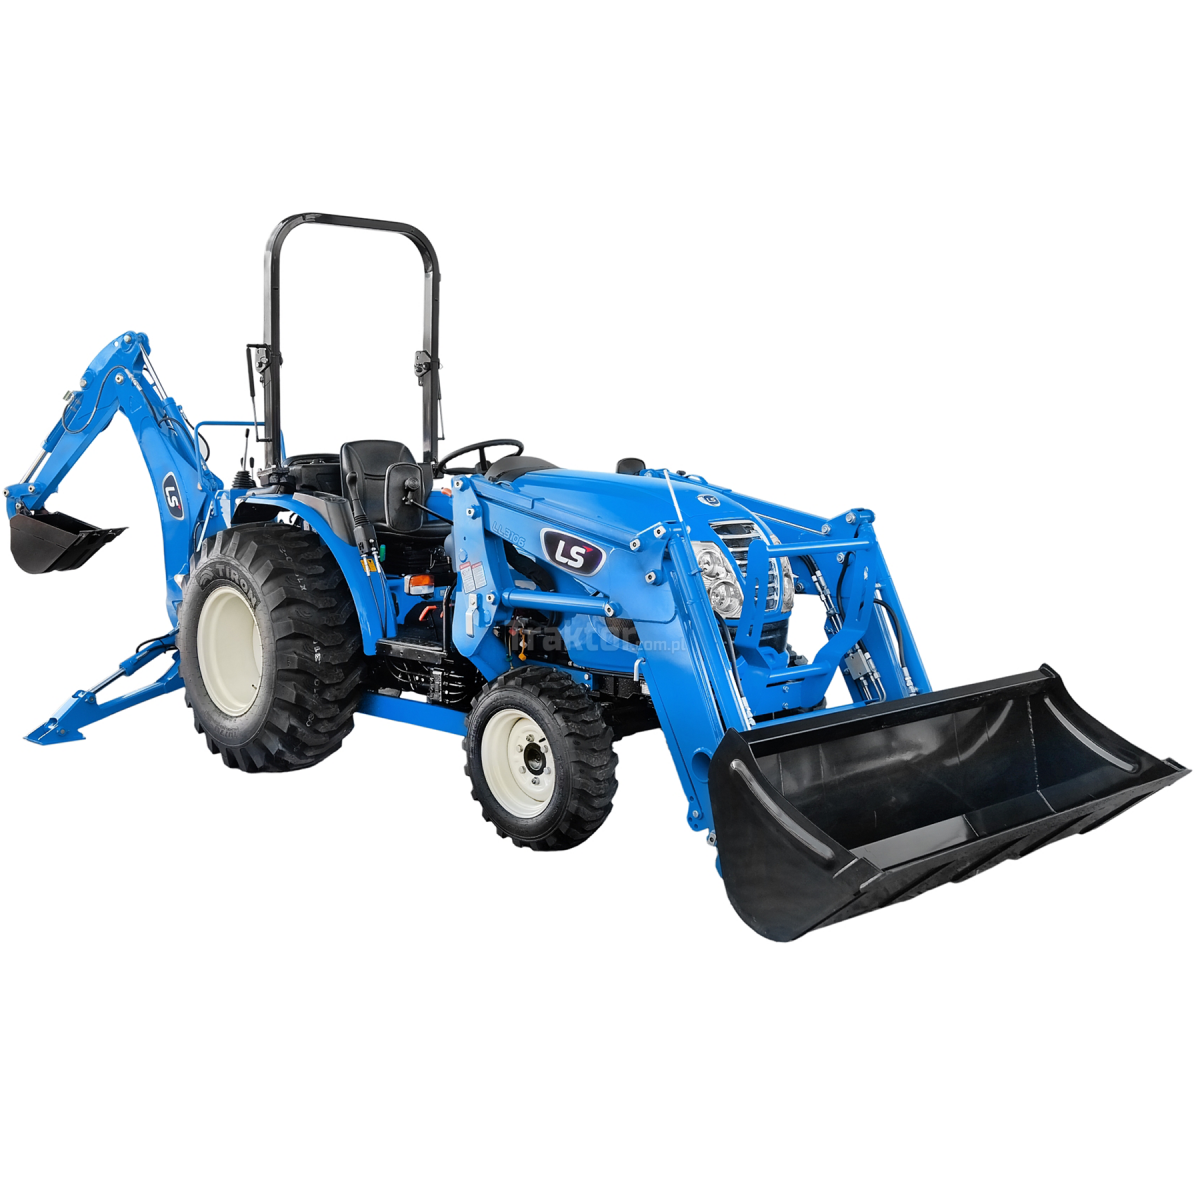 LS Tractor MT3.40 HST 4x4 - 40 HP / IND + cargador frontal LS LL3106 + tractor excavadora LB2100